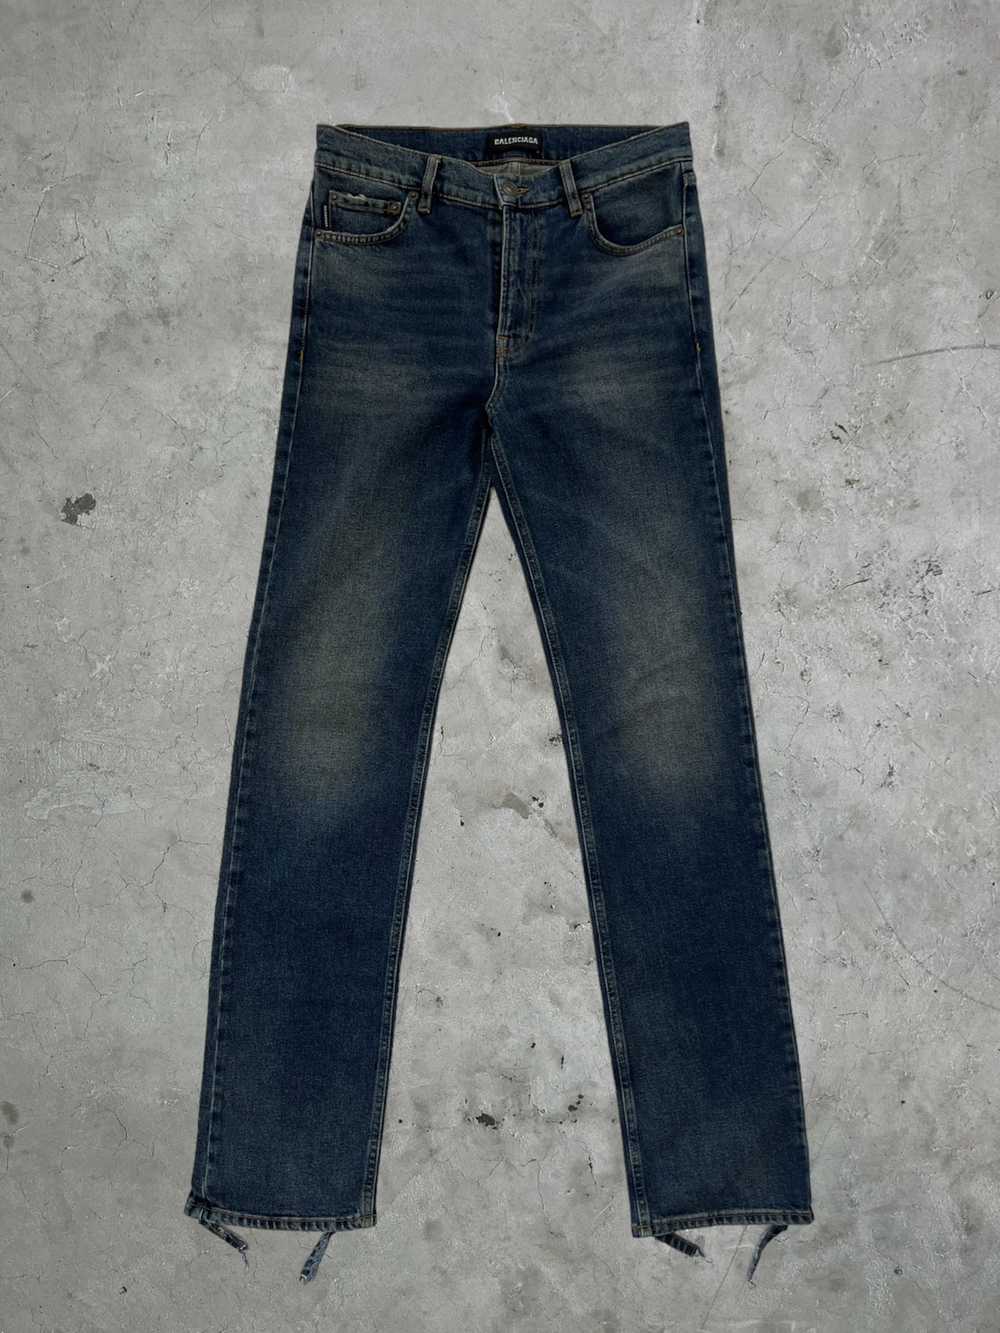 Balenciaga Balenciaga Distressed Jeans - image 1